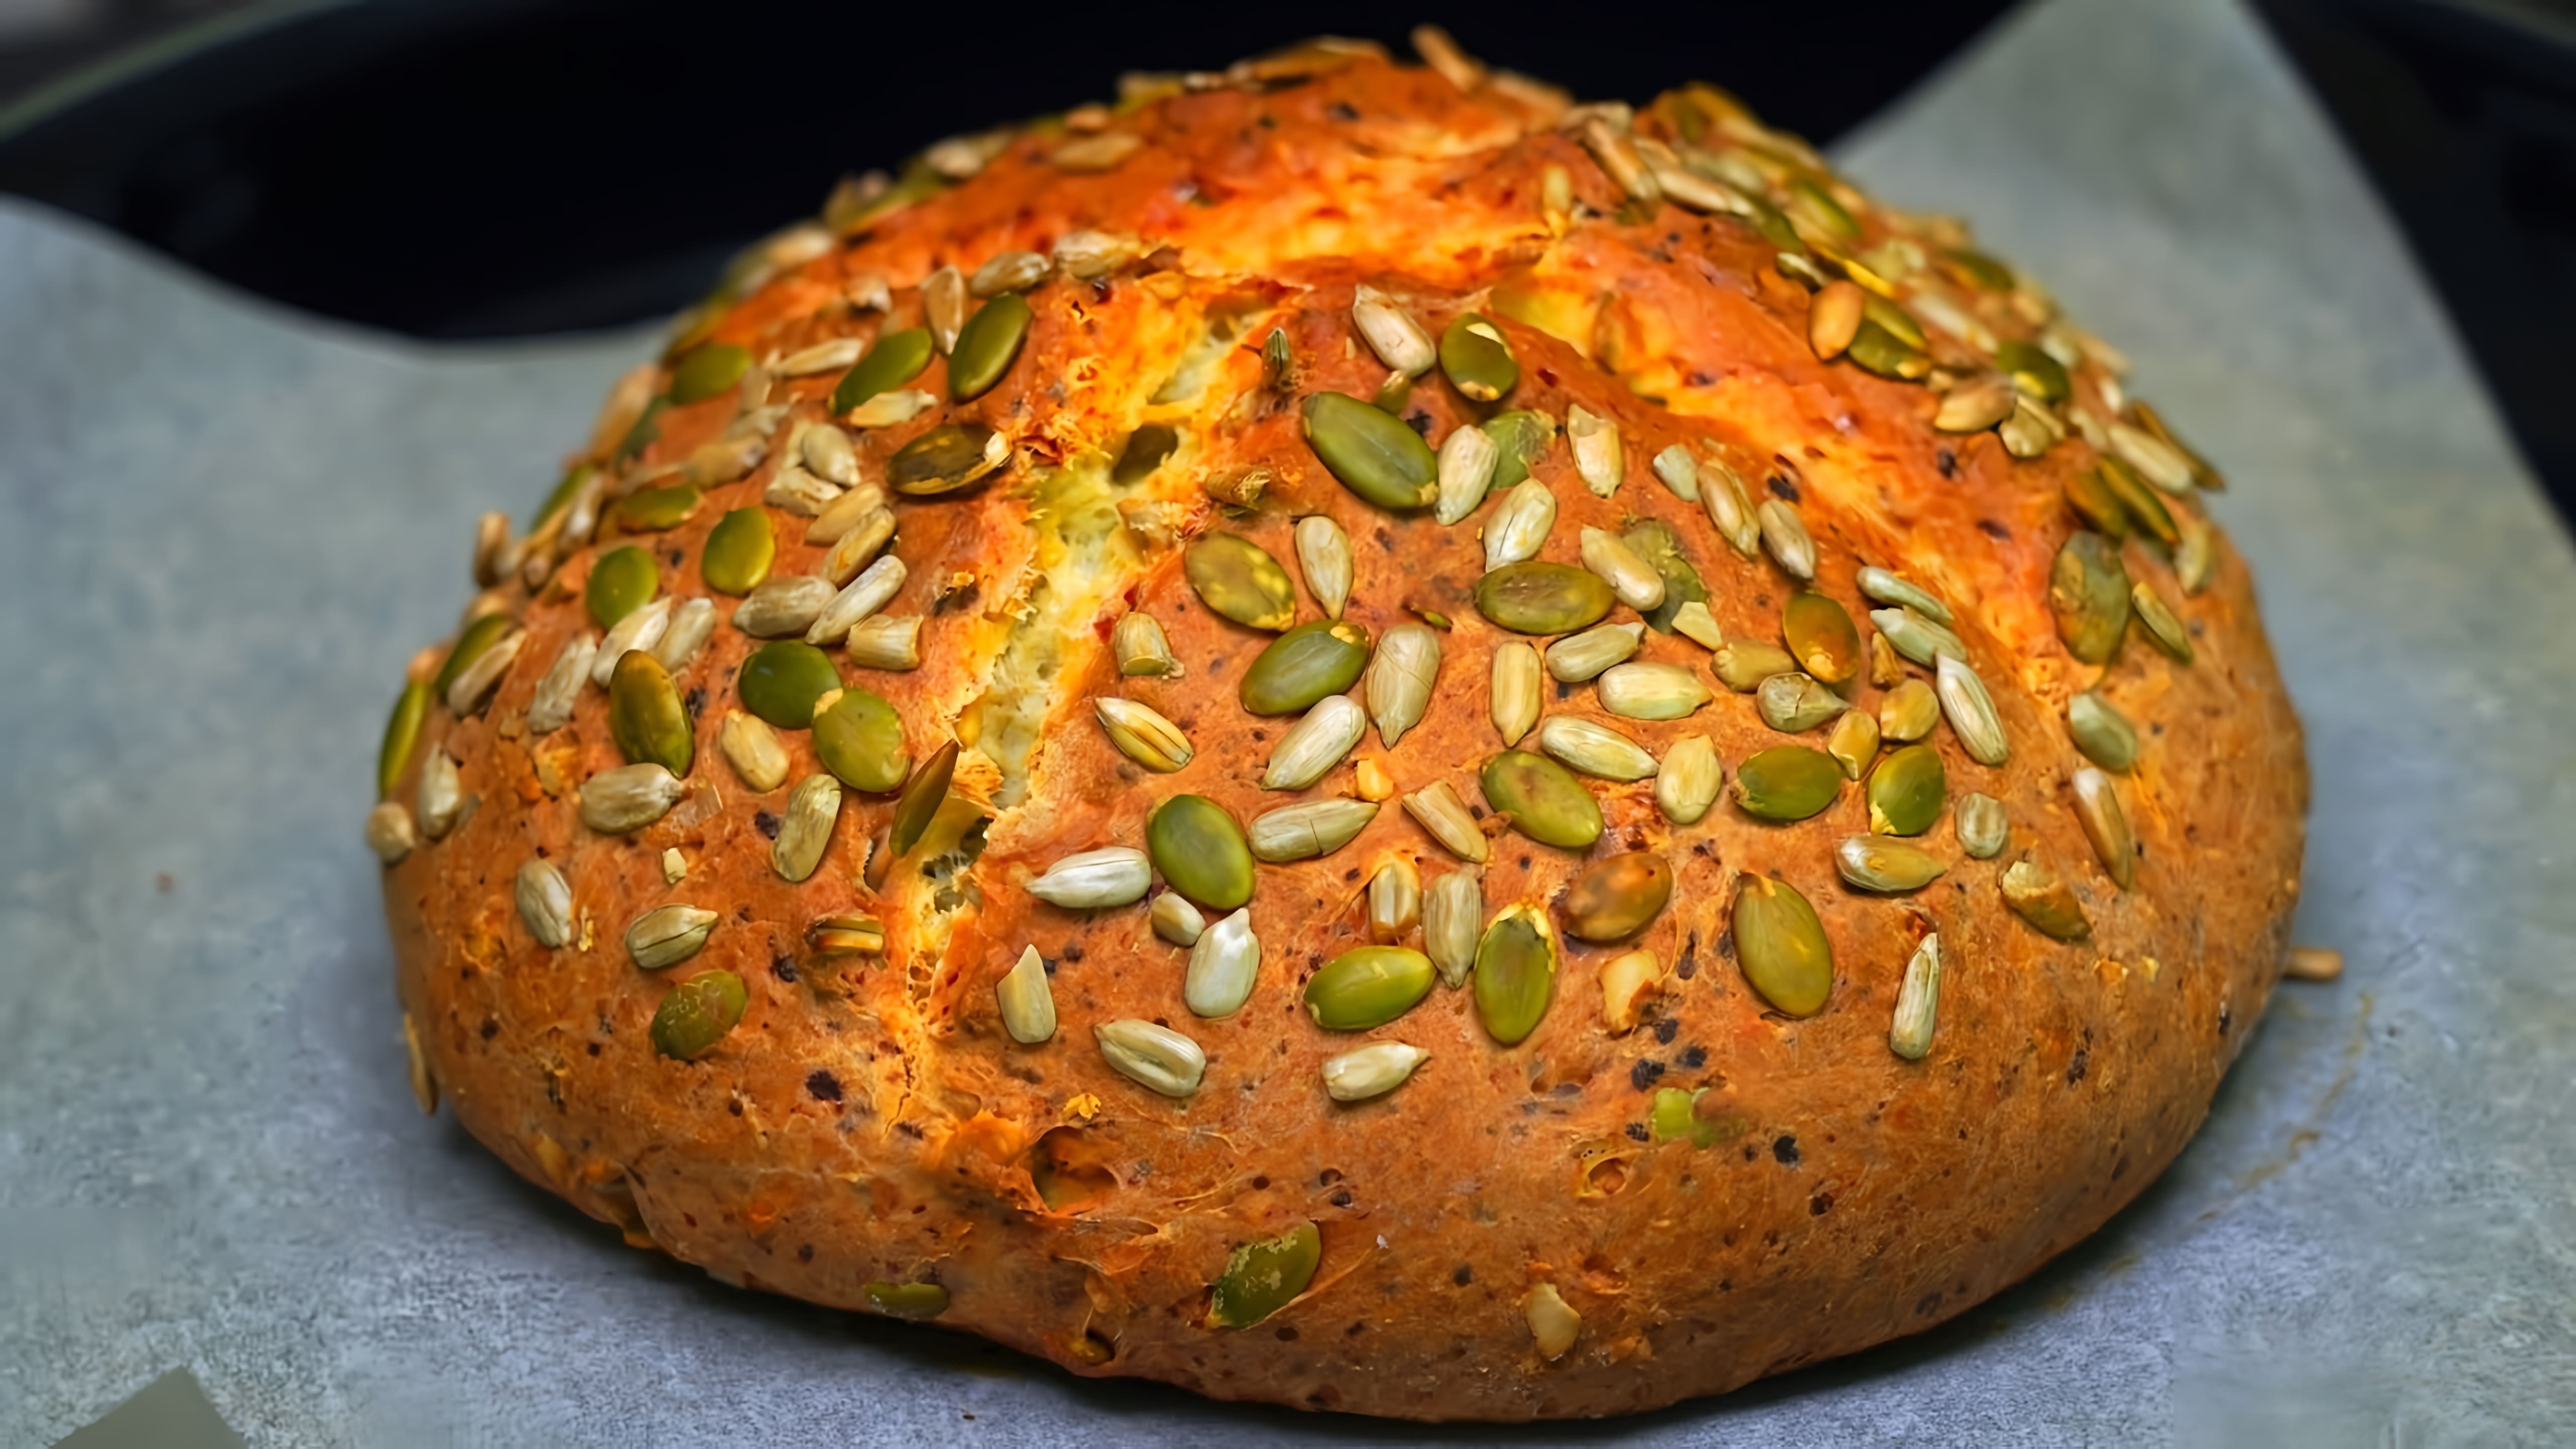 Видео как приготовить простой рецепт хлеба без дрожжей, который является хорошей альтернативой покупному хлебу и может быть быстро приготовлен